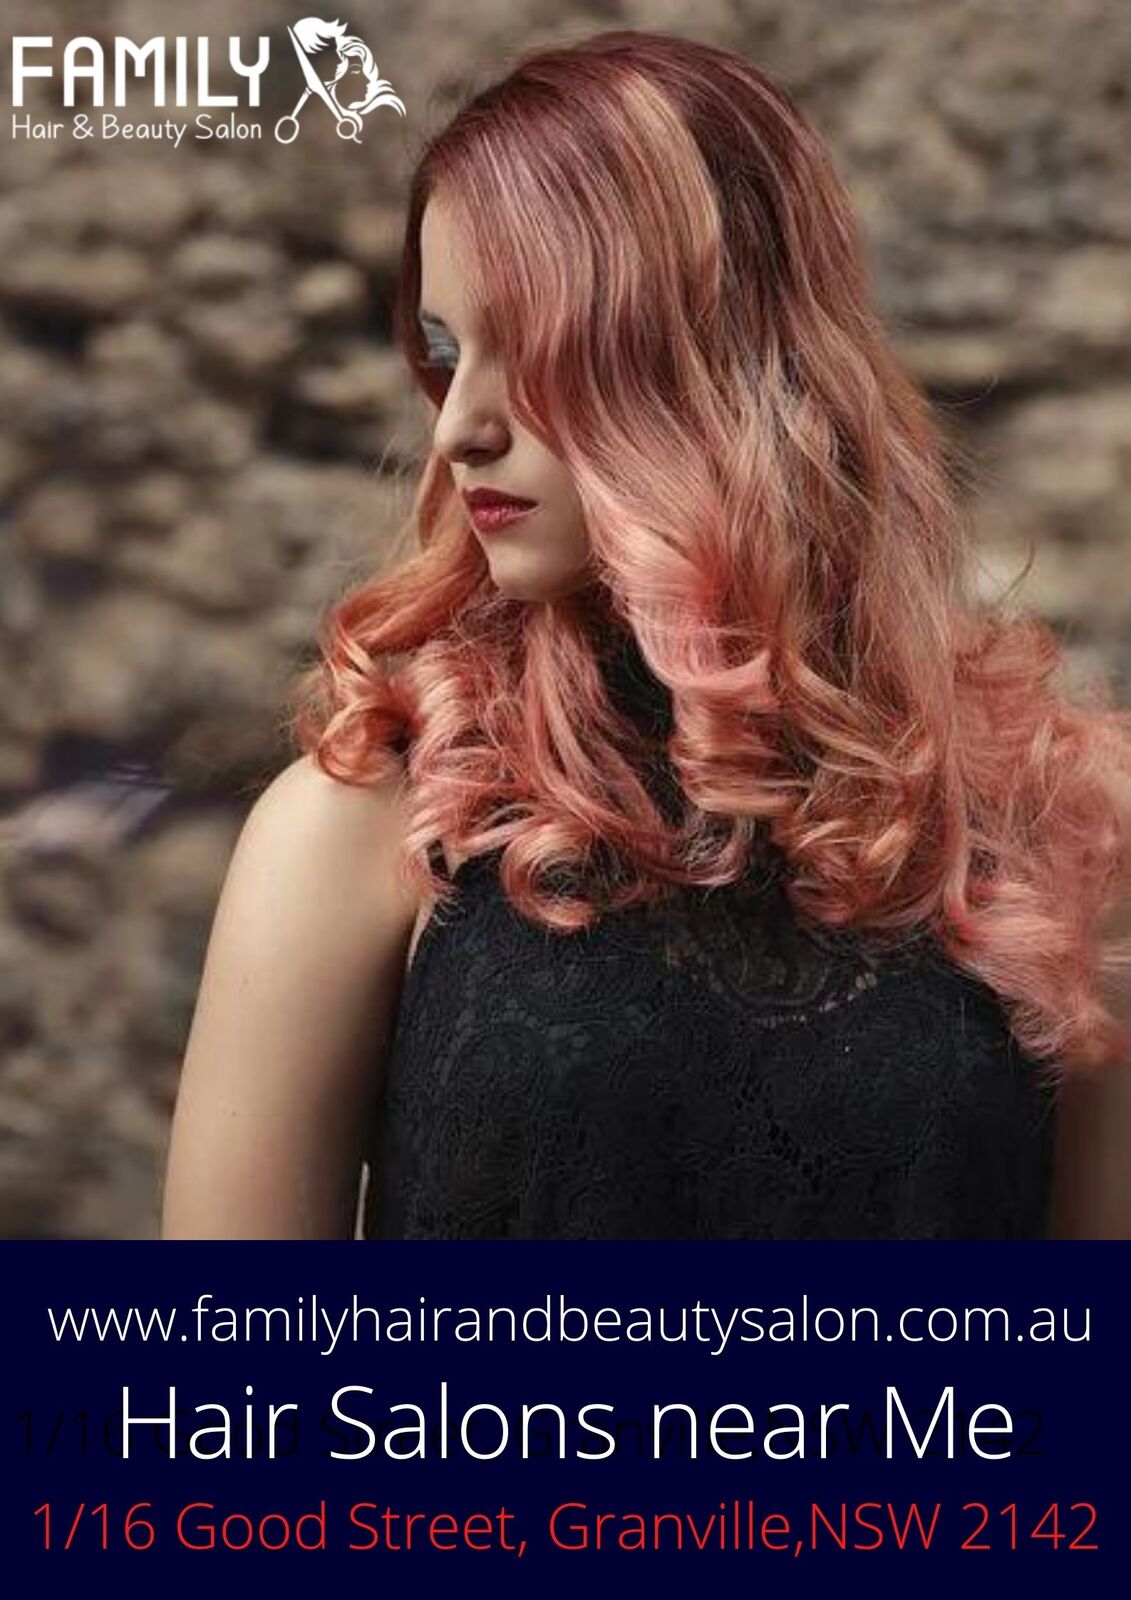 Hair Colour Deals near Me | Organic Hair Colour Salon Sydney |Sydney Hair and Beauty